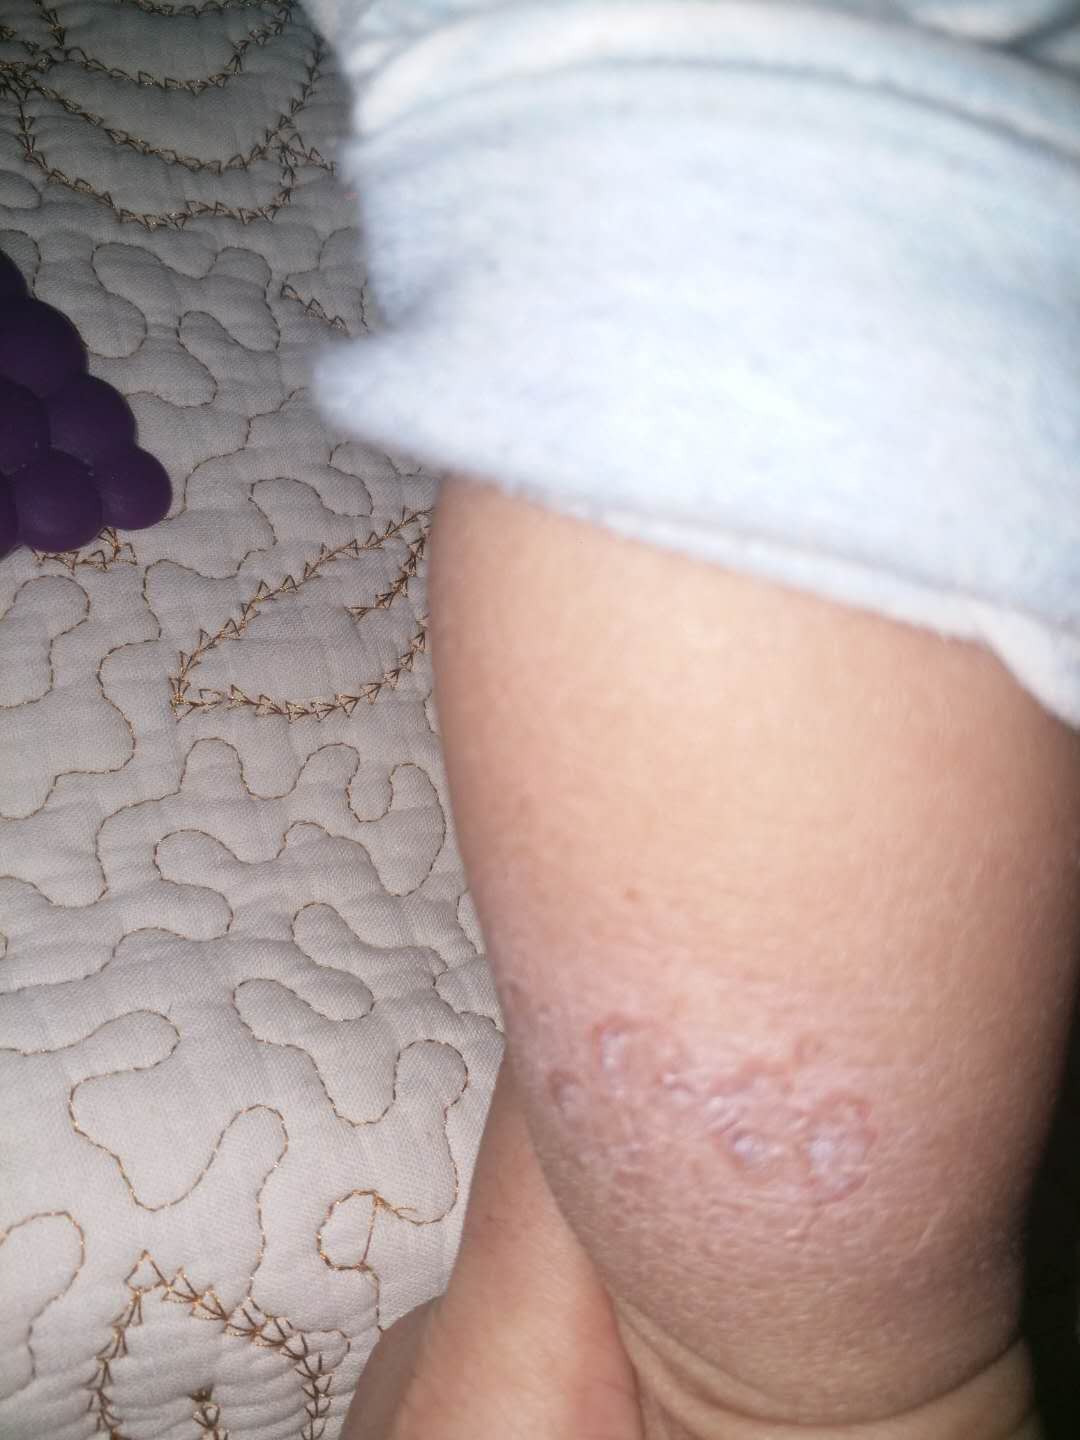 宝宝腿上说是湿疹,结果用了炉甘石,感觉严重了,麻烦看看,这是